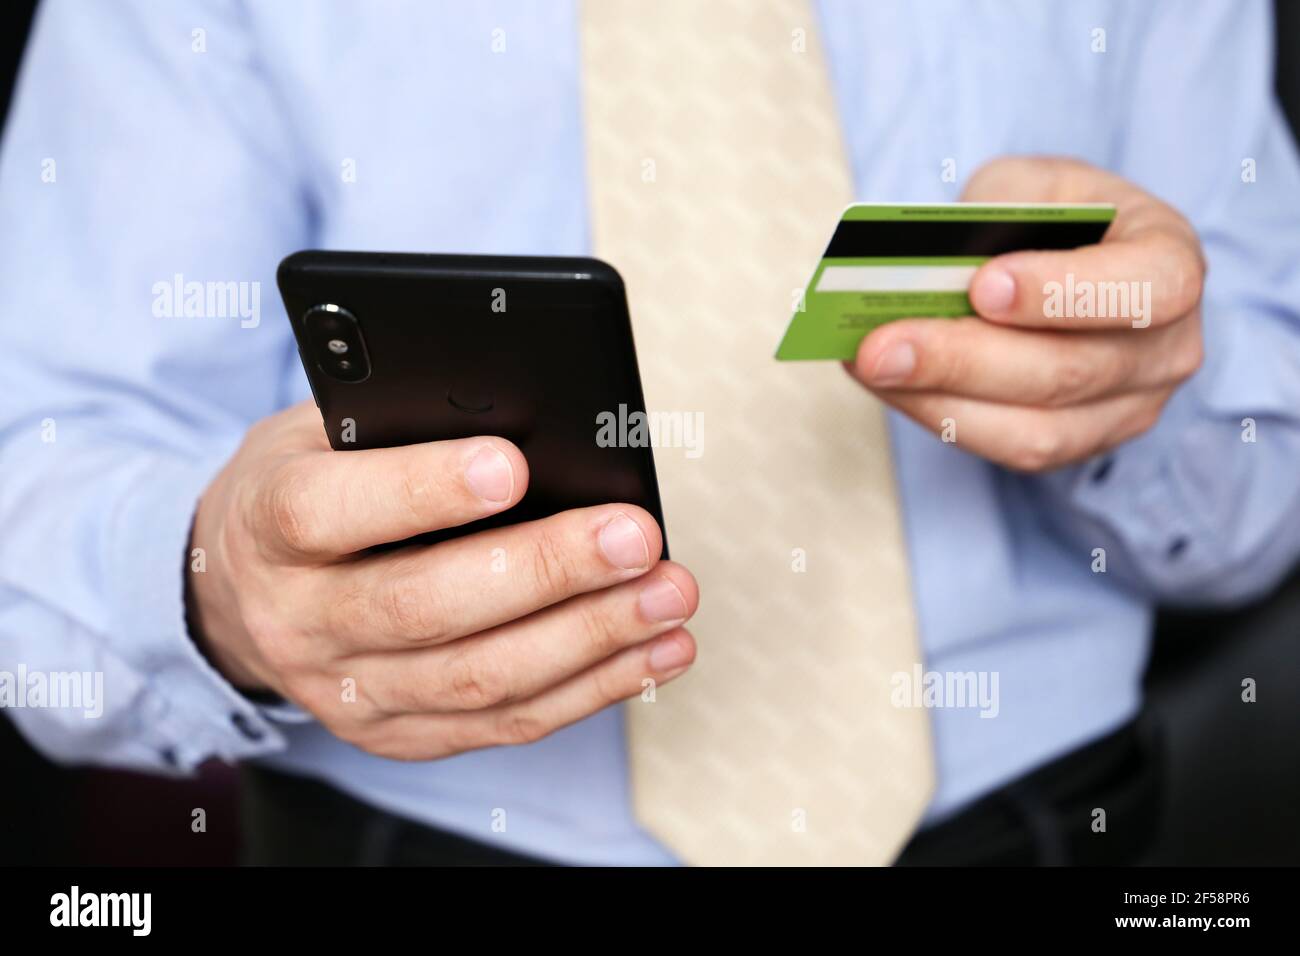 Hombre en ropa de oficina con tarjeta bancaria de crédito y smartphone en las manos. Concepto de compra y pago en línea, transacción financiera Foto de stock